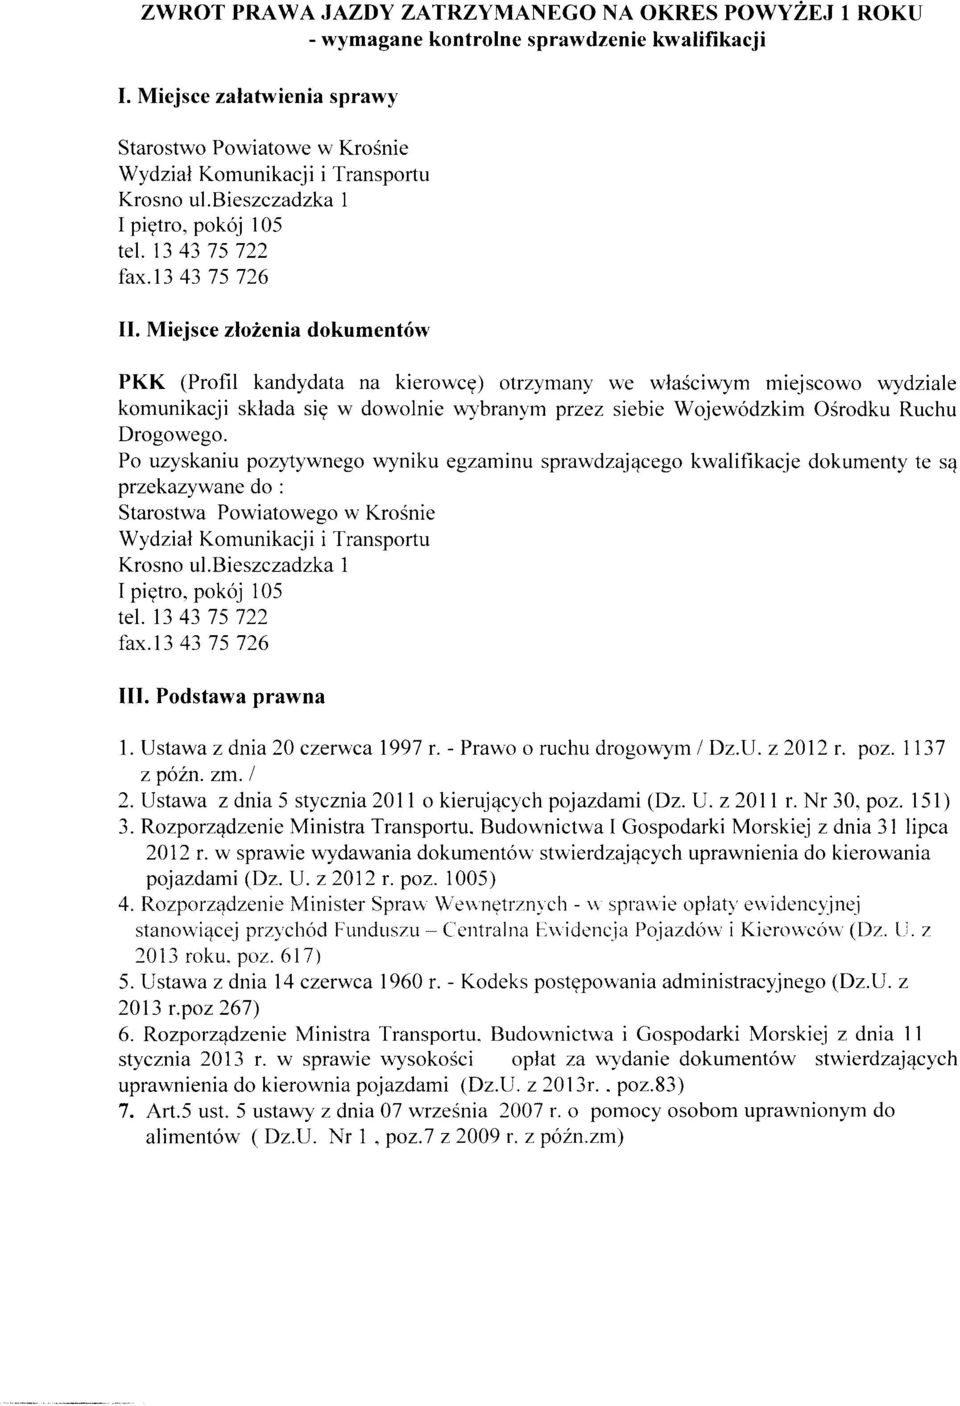 Po uzyskaniu pozytywnego wyniku egzaminu sprawdzającego kwalifikacje dokumenty te są przekazywane do : Starostwa Powiatowego w Krośnie III. Podstawa prawna 1. Ustawa z dnia 20 czerwca 1997 r.